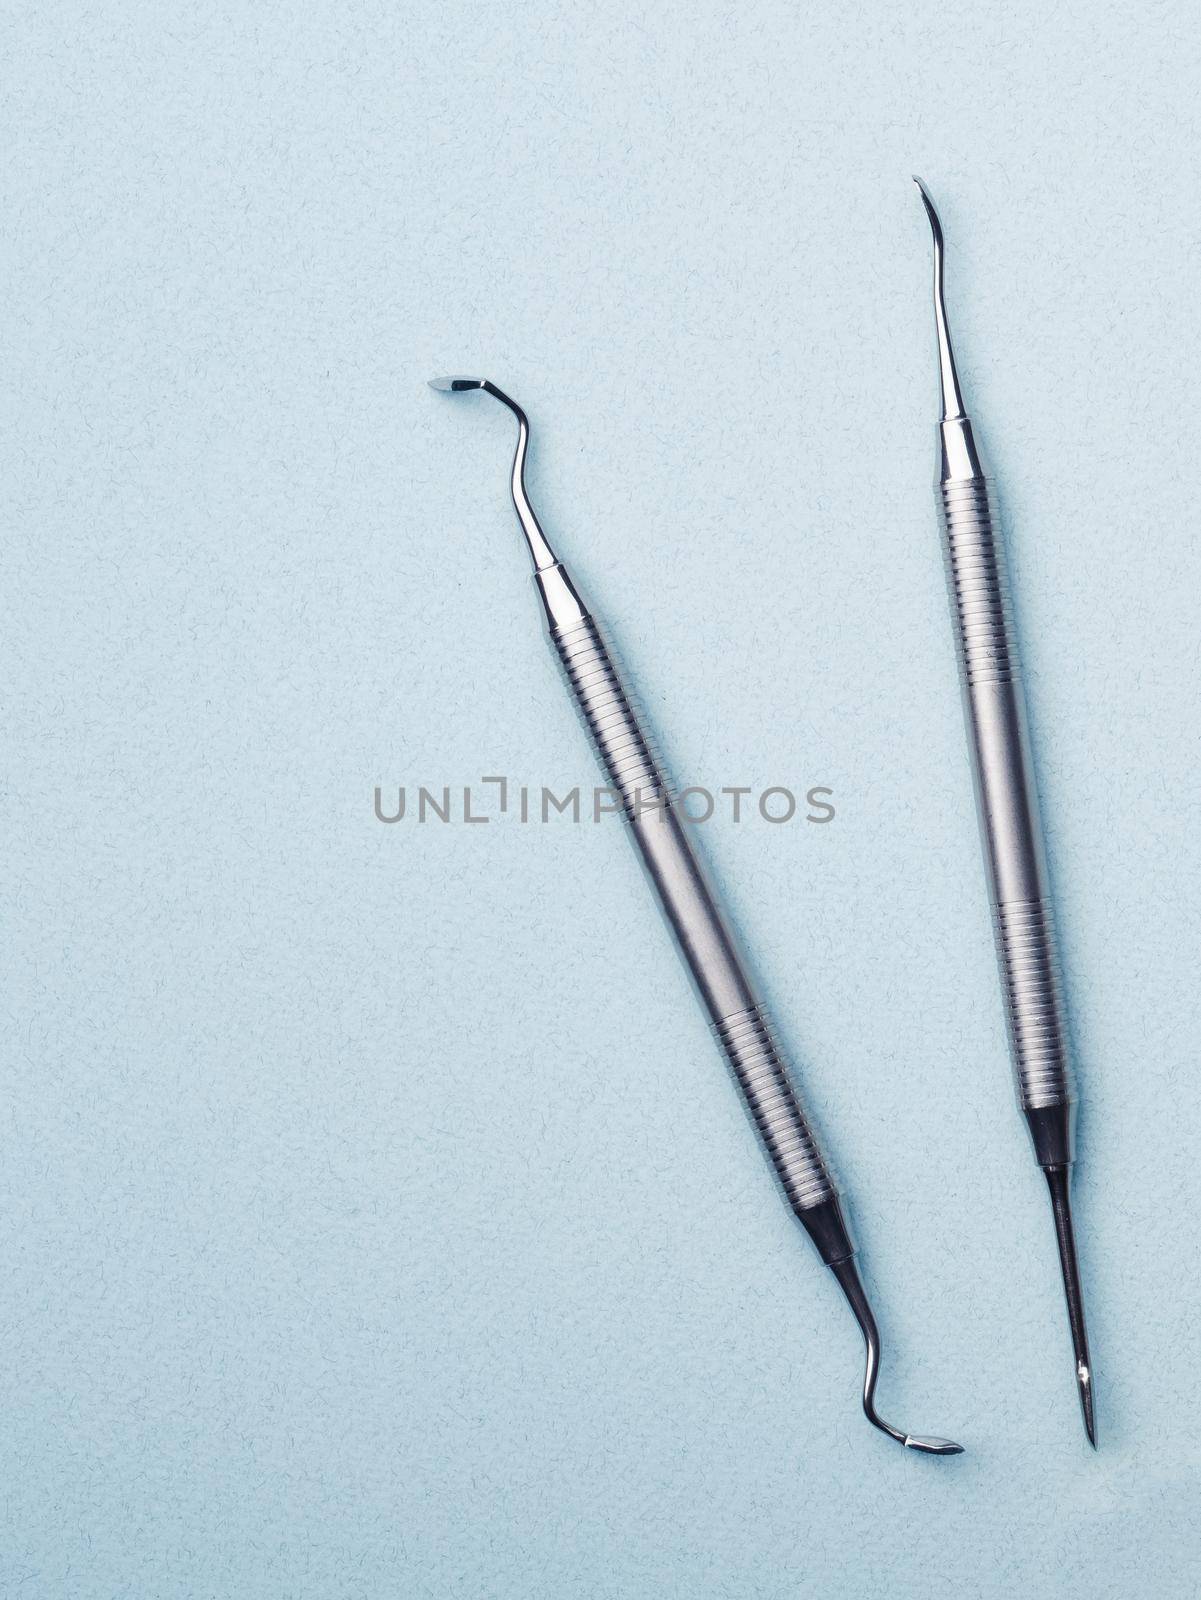 Metal dental tools by GekaSkr